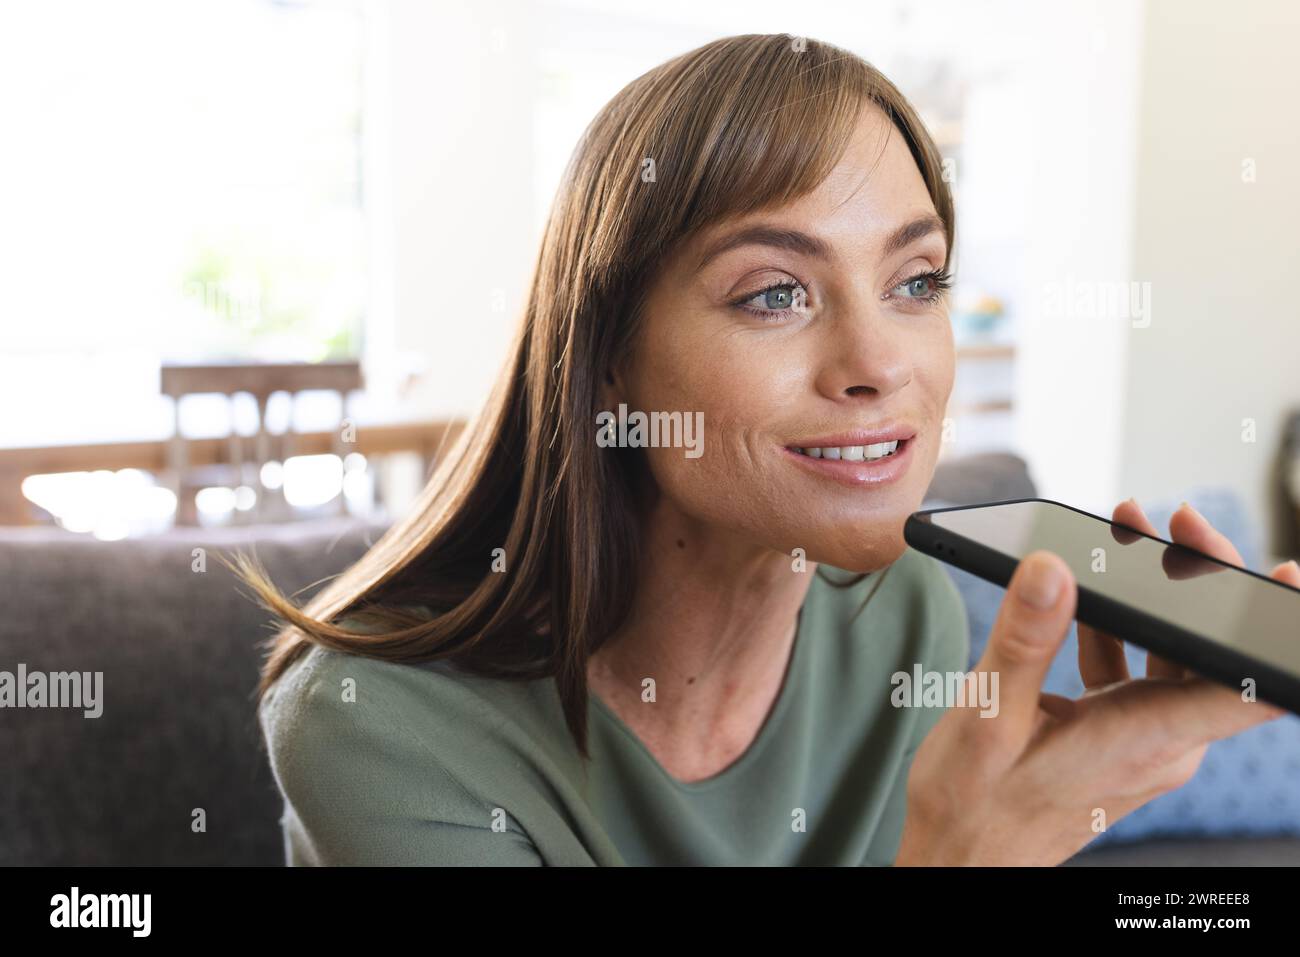 Mujer caucásica habla en un teléfono inteligente, su cabello castaño enmarcando su cara sonriente Foto de stock